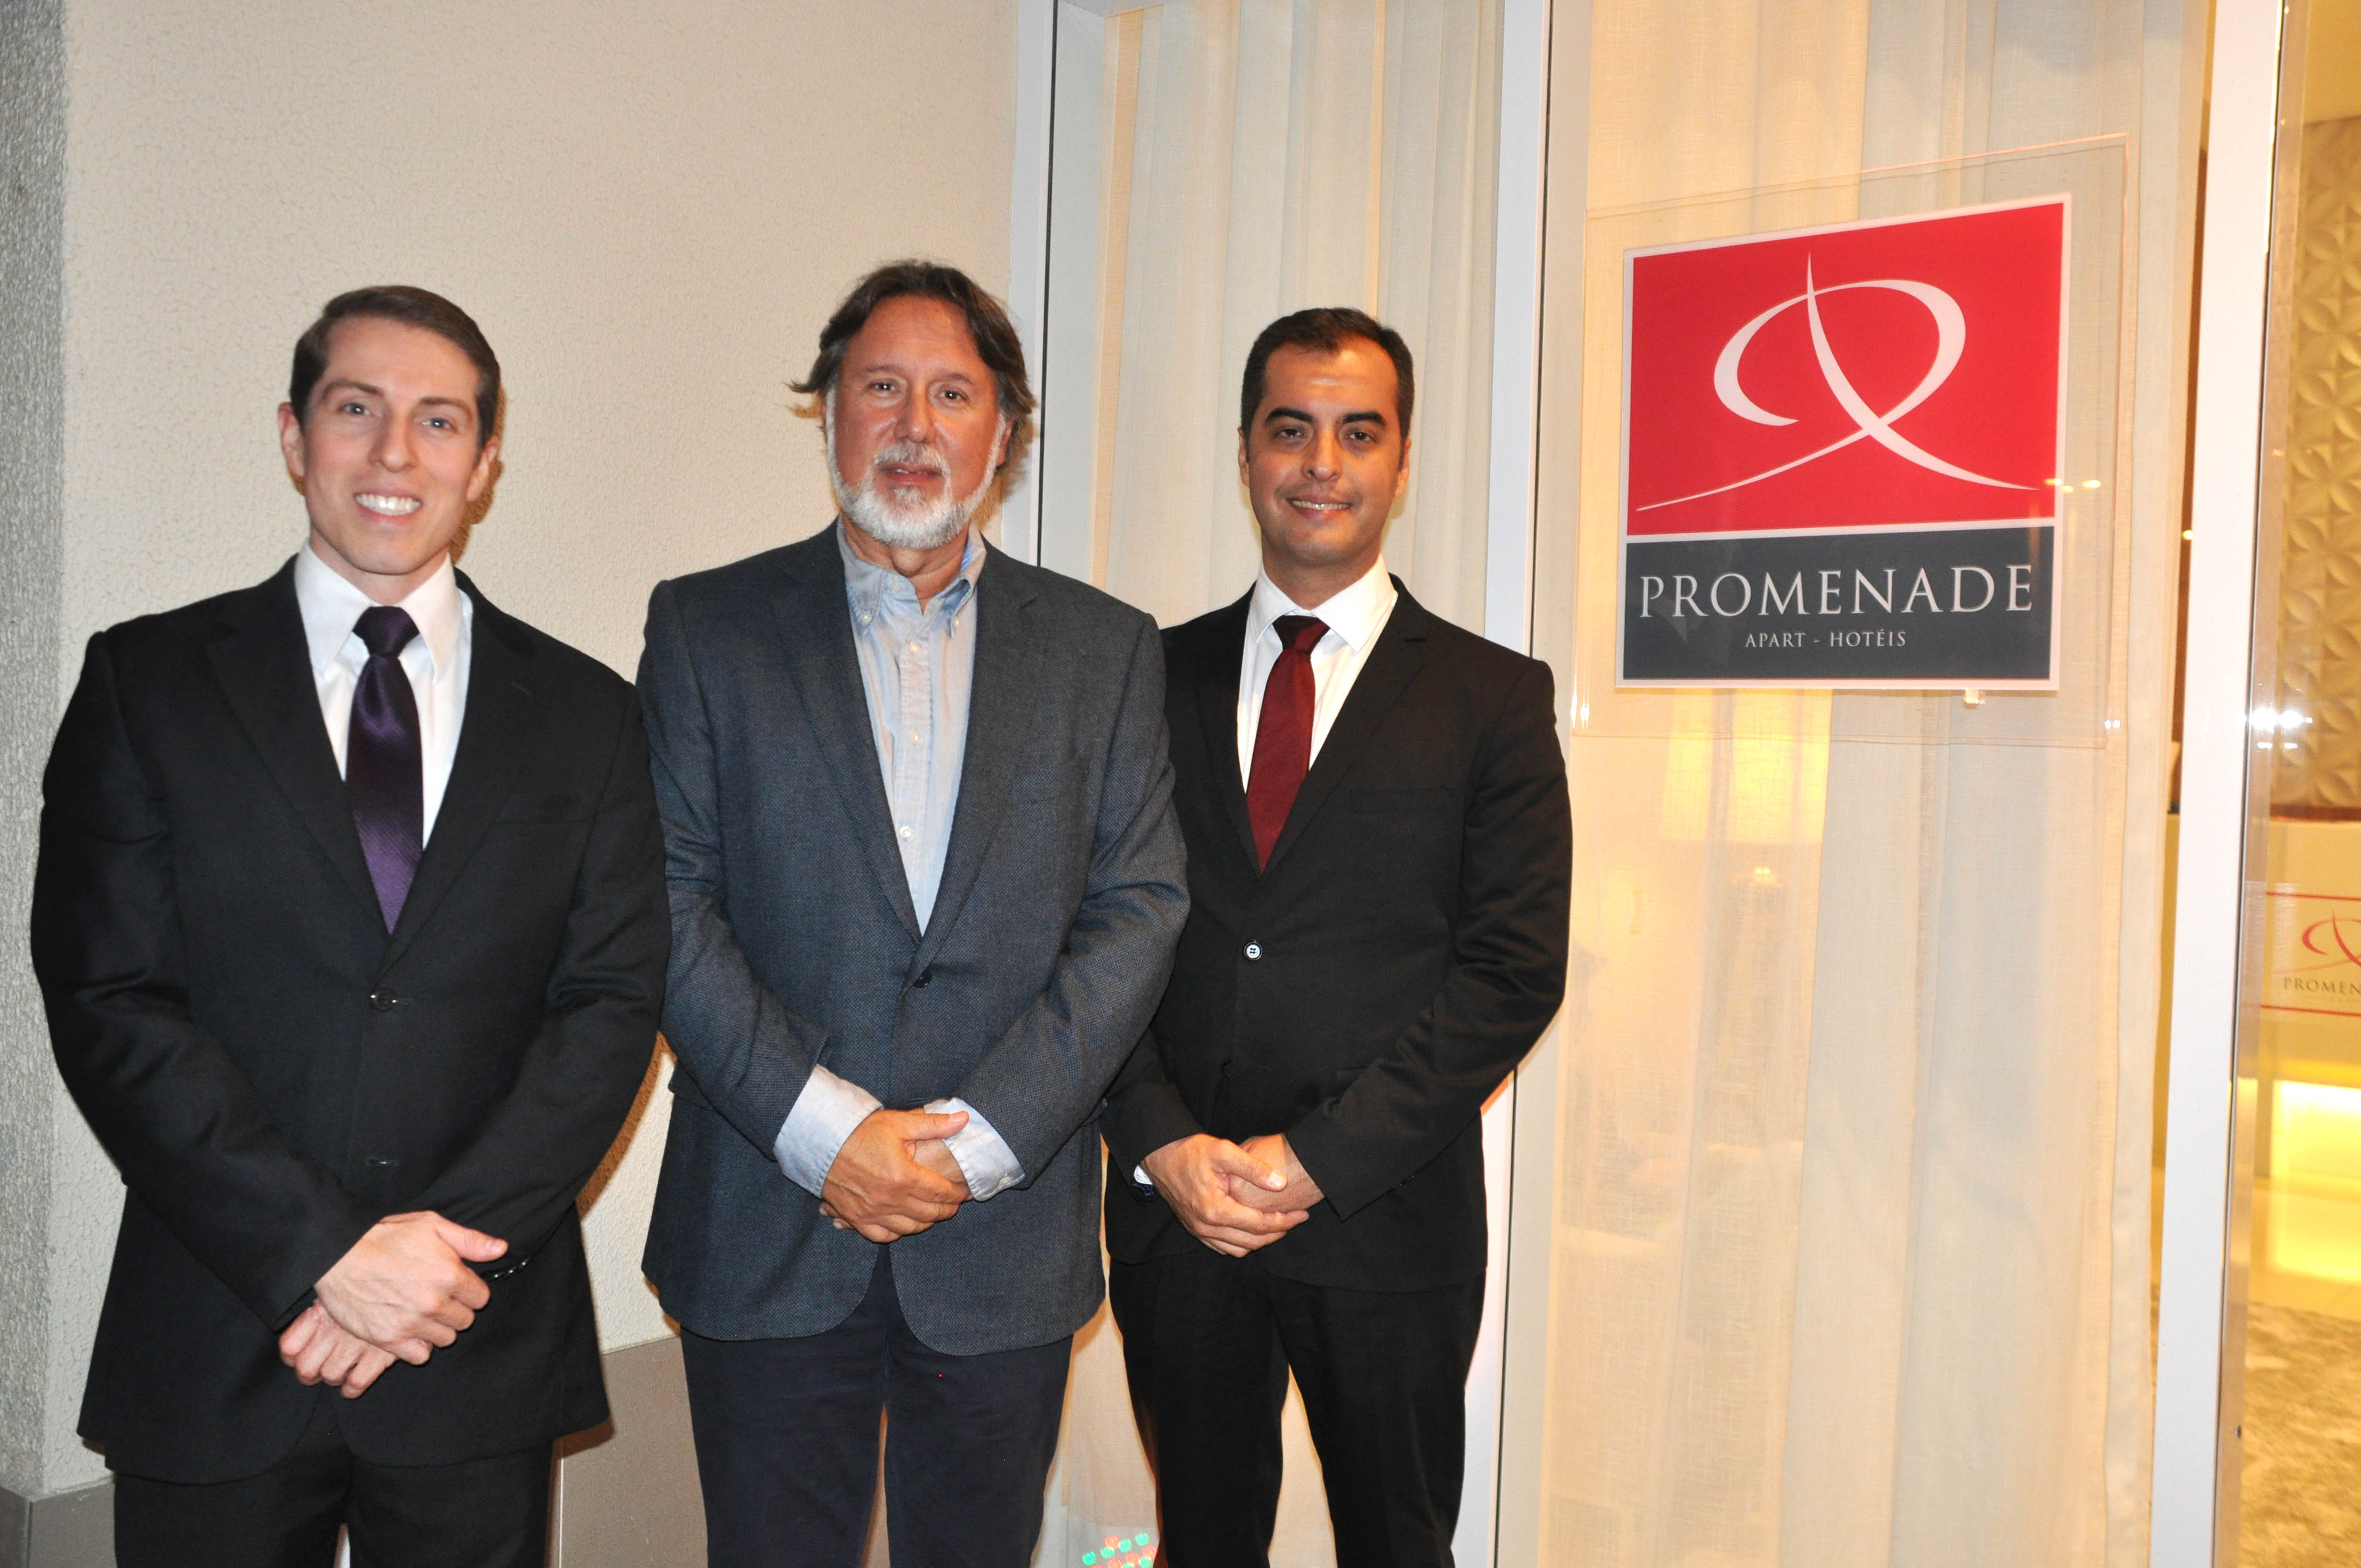 o diretor da rede Promenade, Emir Penna, com Fábio Frediano, gerente geral, e Brunno Poli, gerente comercial do Promenade Rio Stay